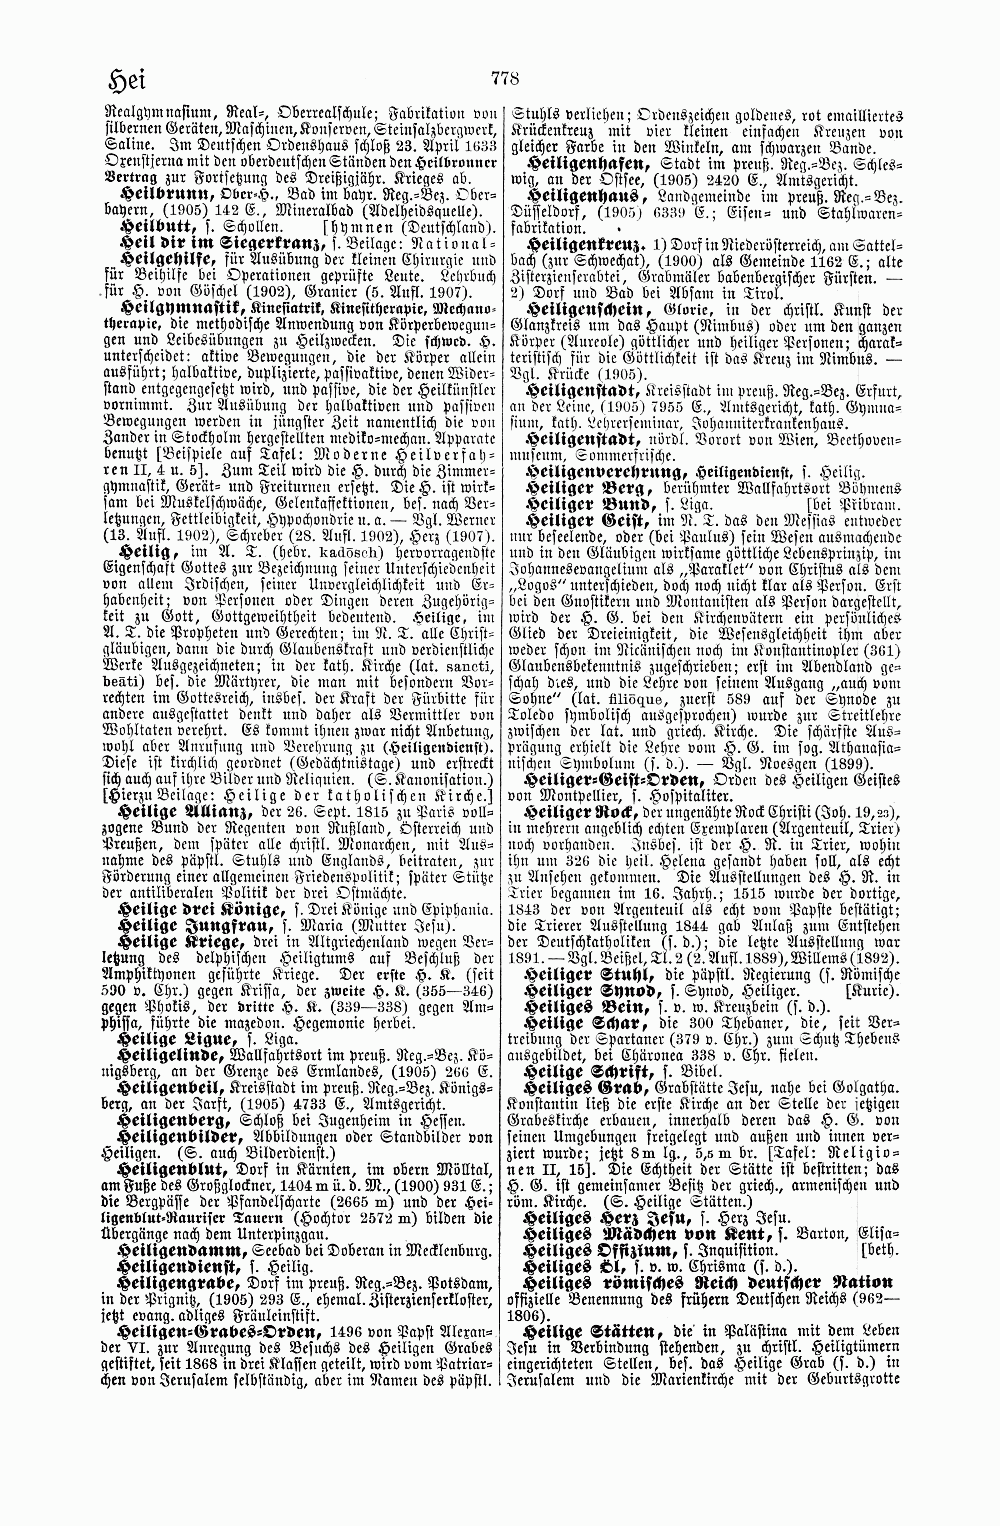 Brockhaus' Kleines Konversations-Lexikon, fünfte Auflage, Band 1. Leipzig 1911. S. 778